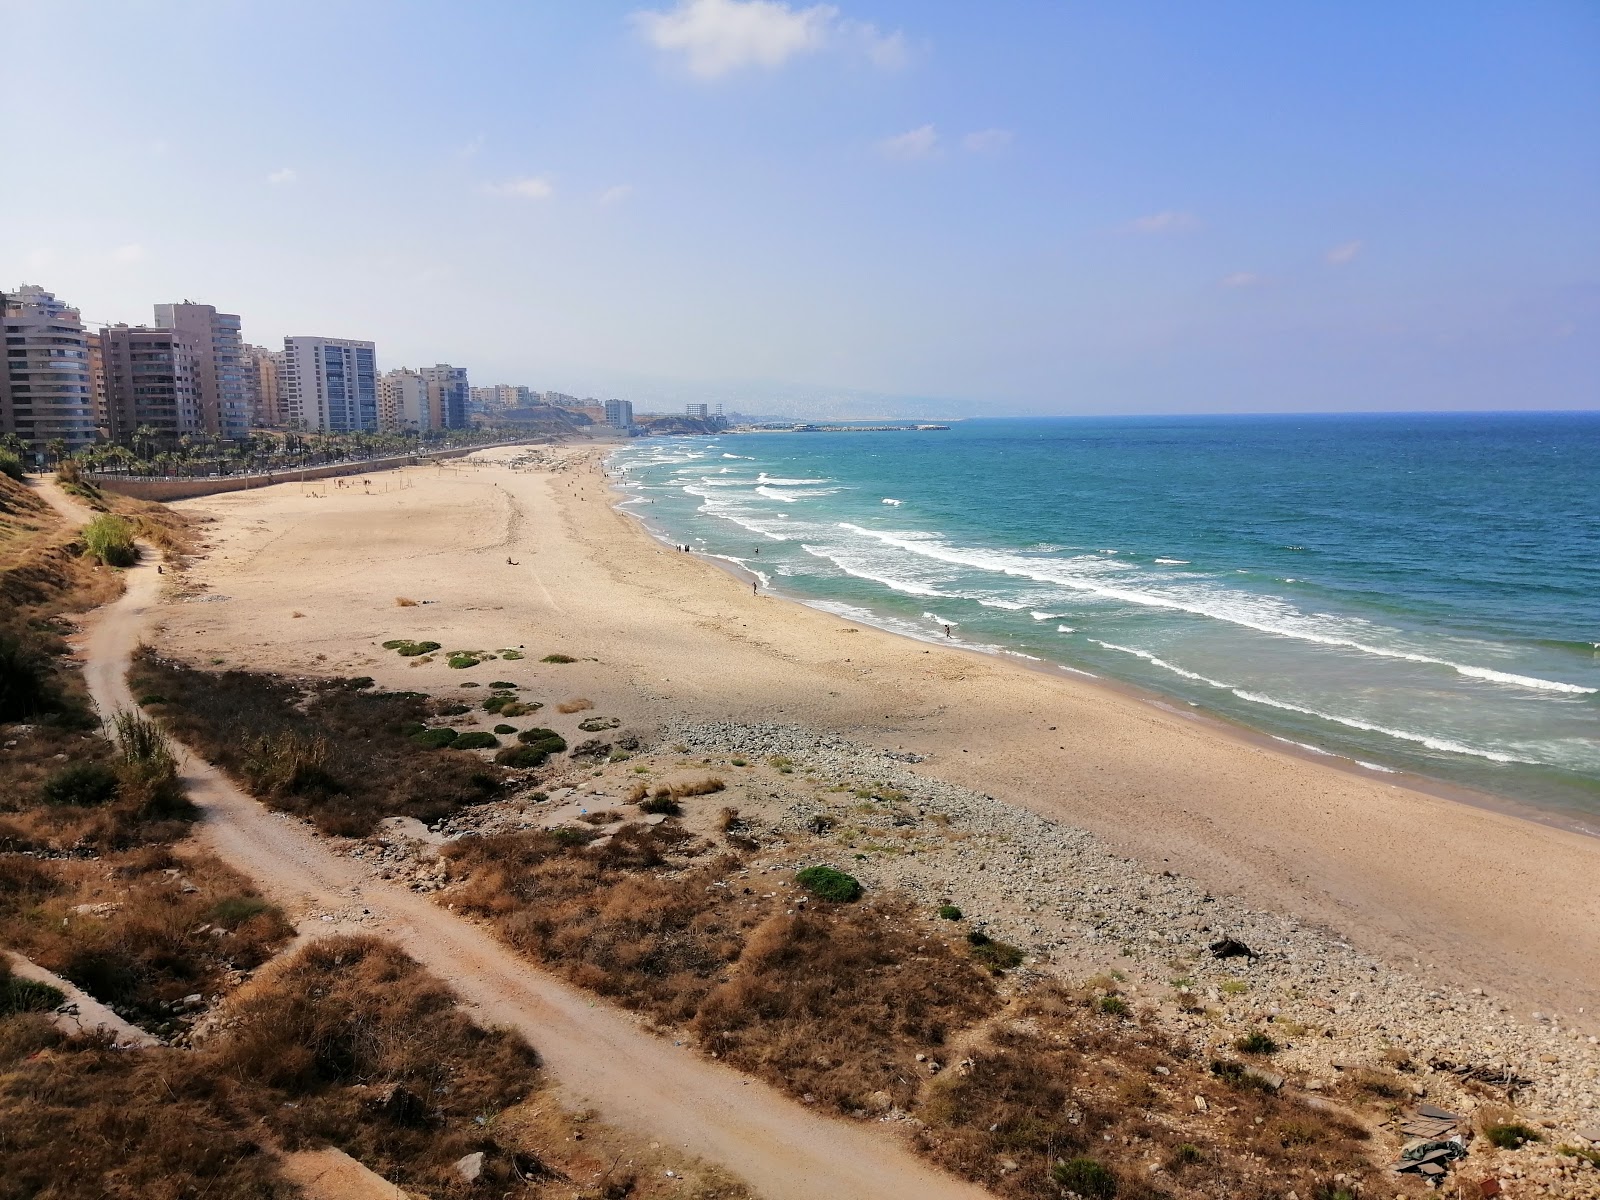 Fotografie cu Ramlet Al Baida Beirut cu o suprafață de nisip strălucitor